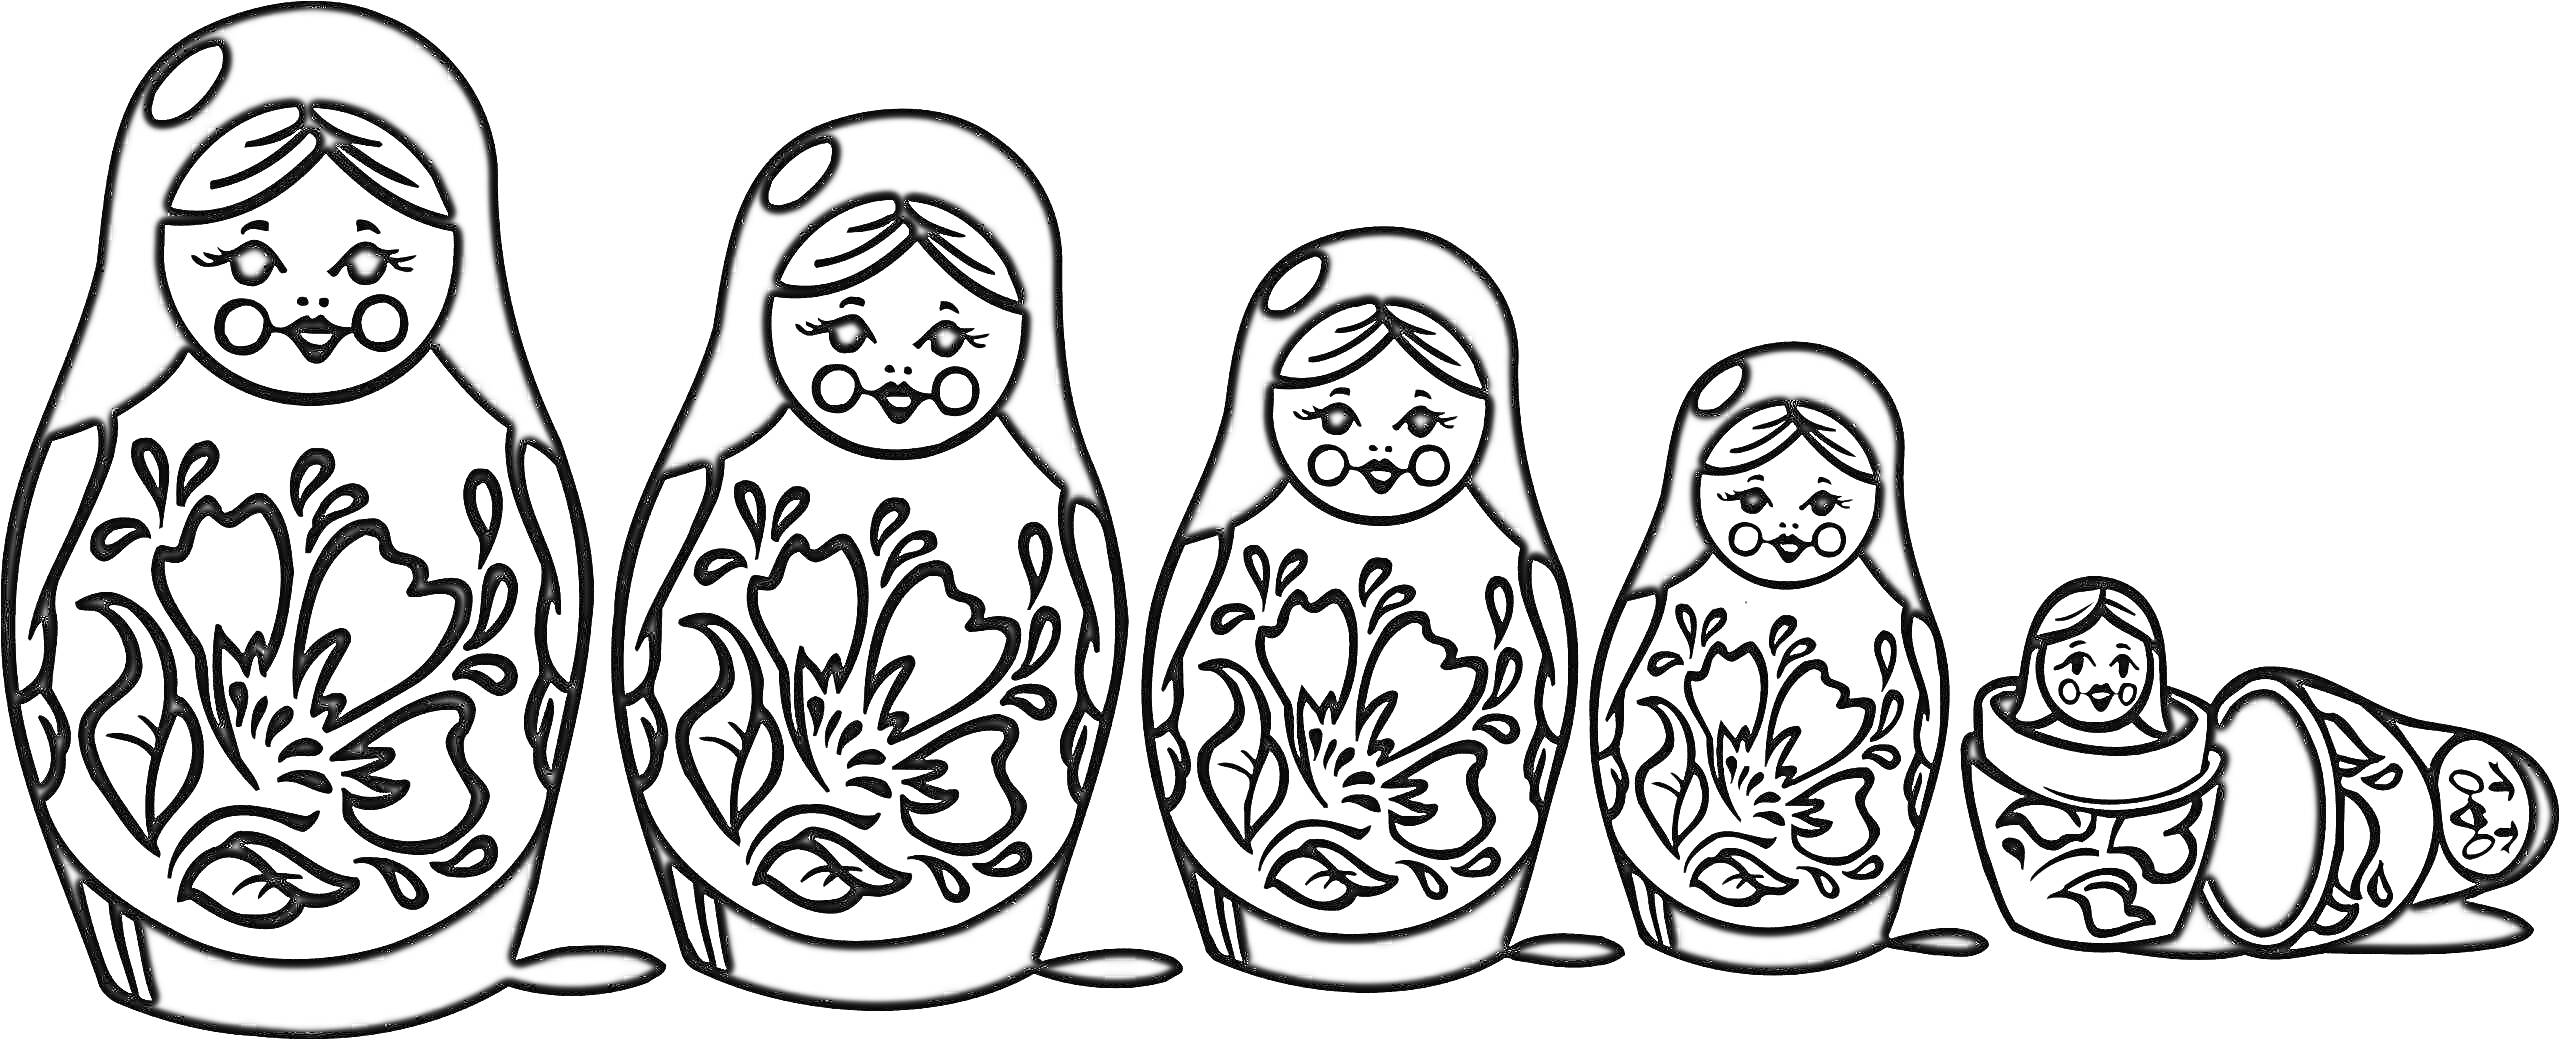 Матрешка с цветочным узором из пяти кукол, одна из которых разобрана на две половинки с куклой внутри